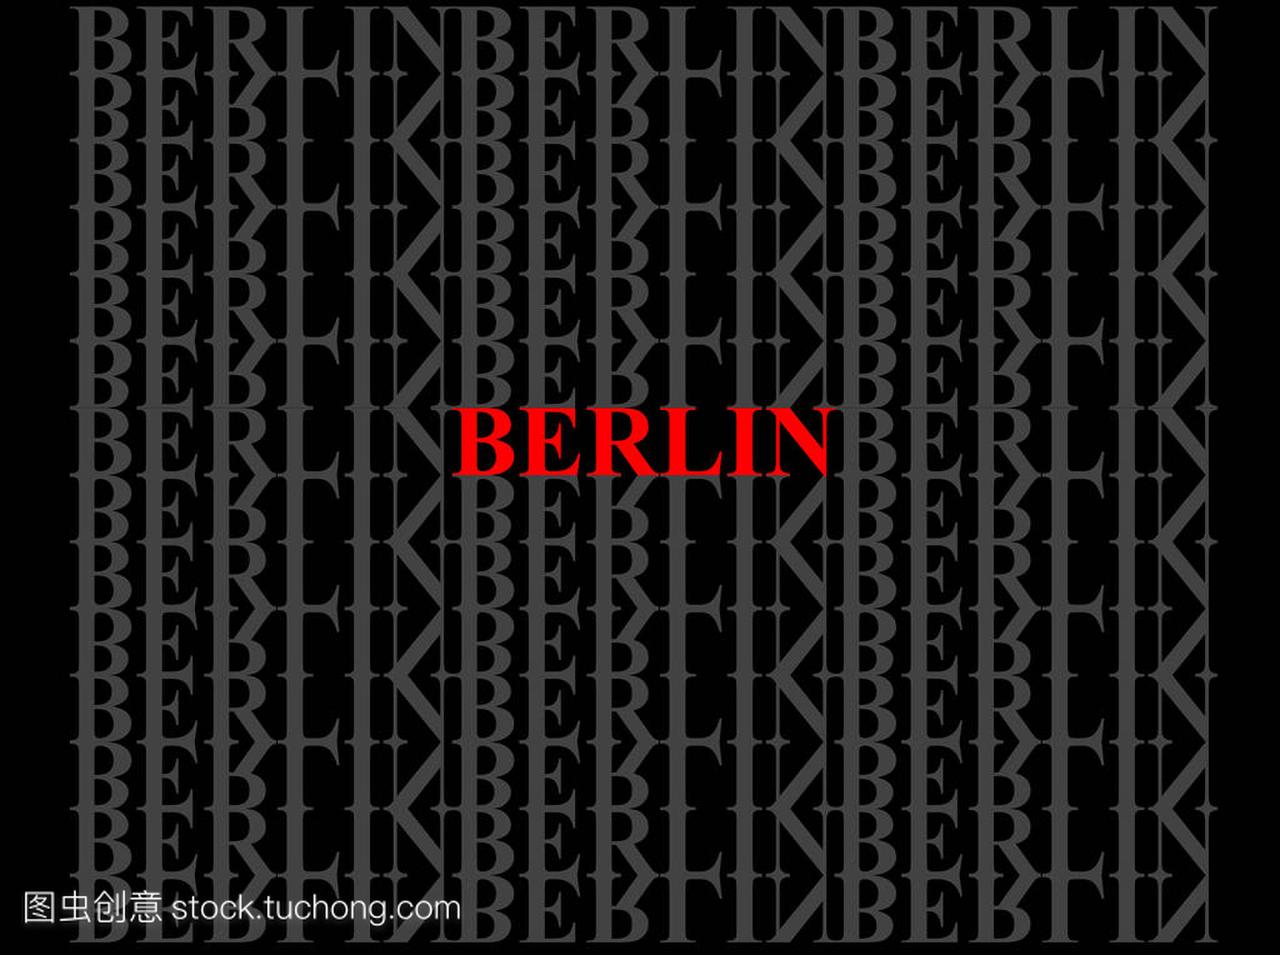 柏林。这个城市的名字在英语上的字母图案的背